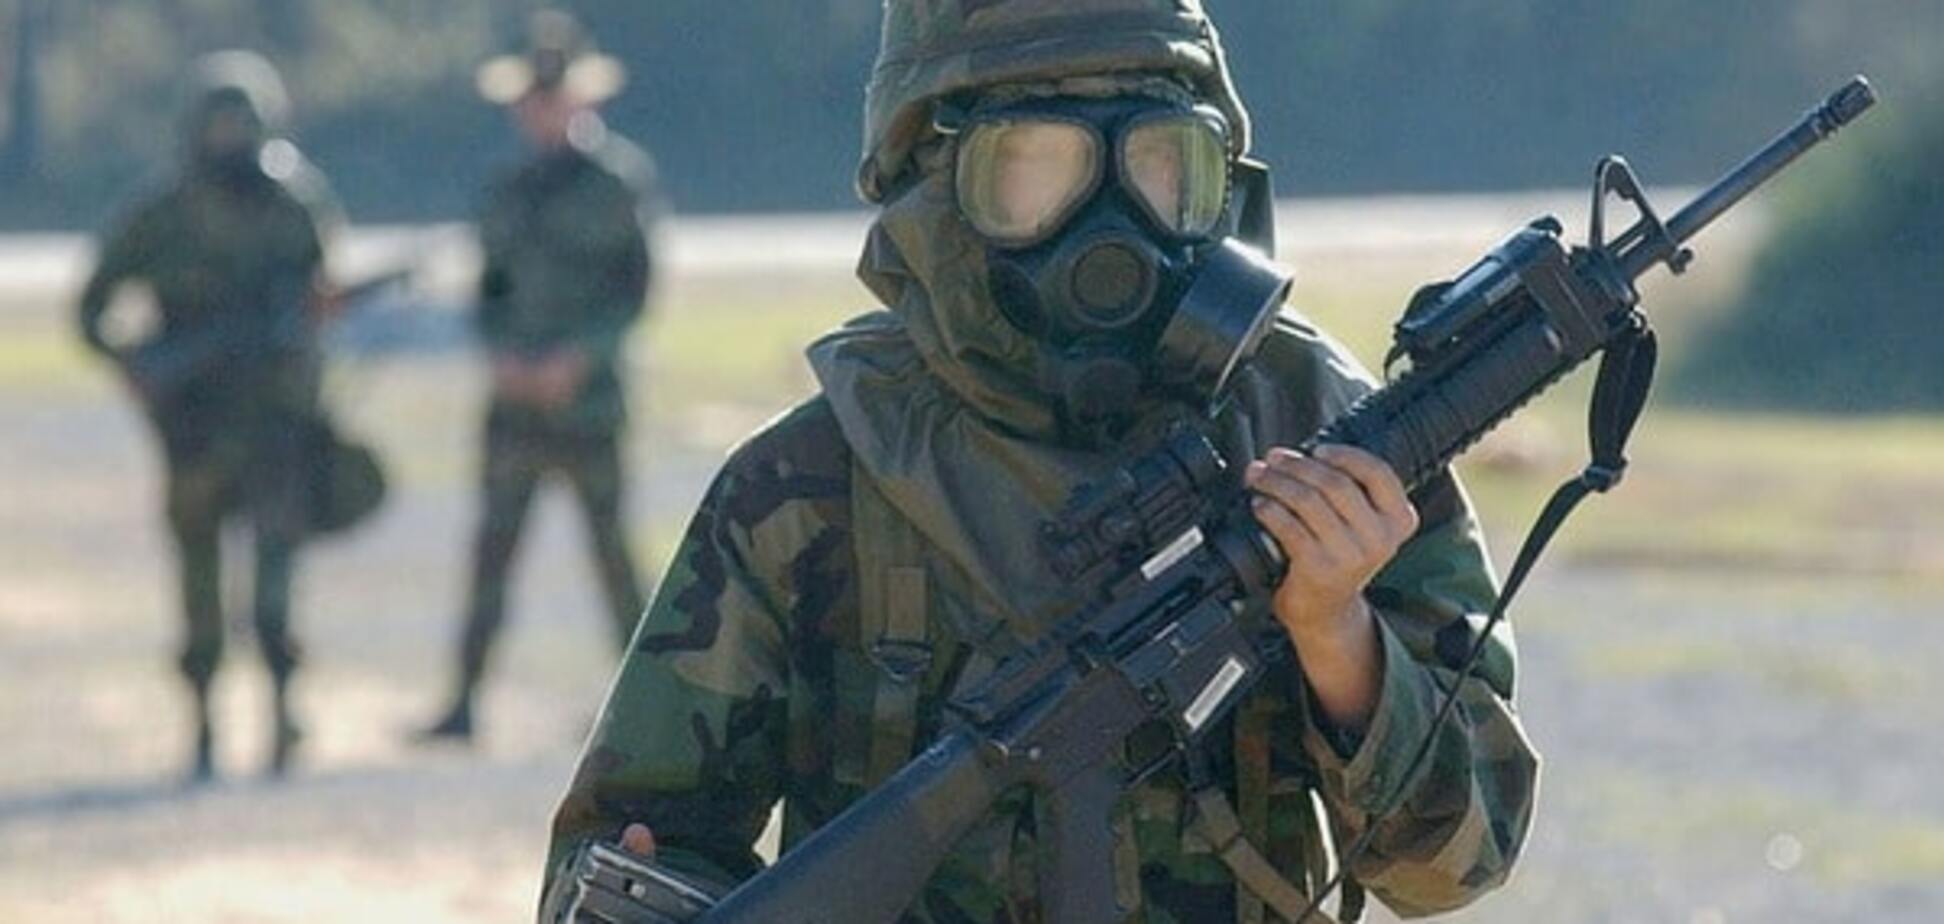 'ДНР' запустила фейк о готовности ВСУ использовать химоружие на Донбассе